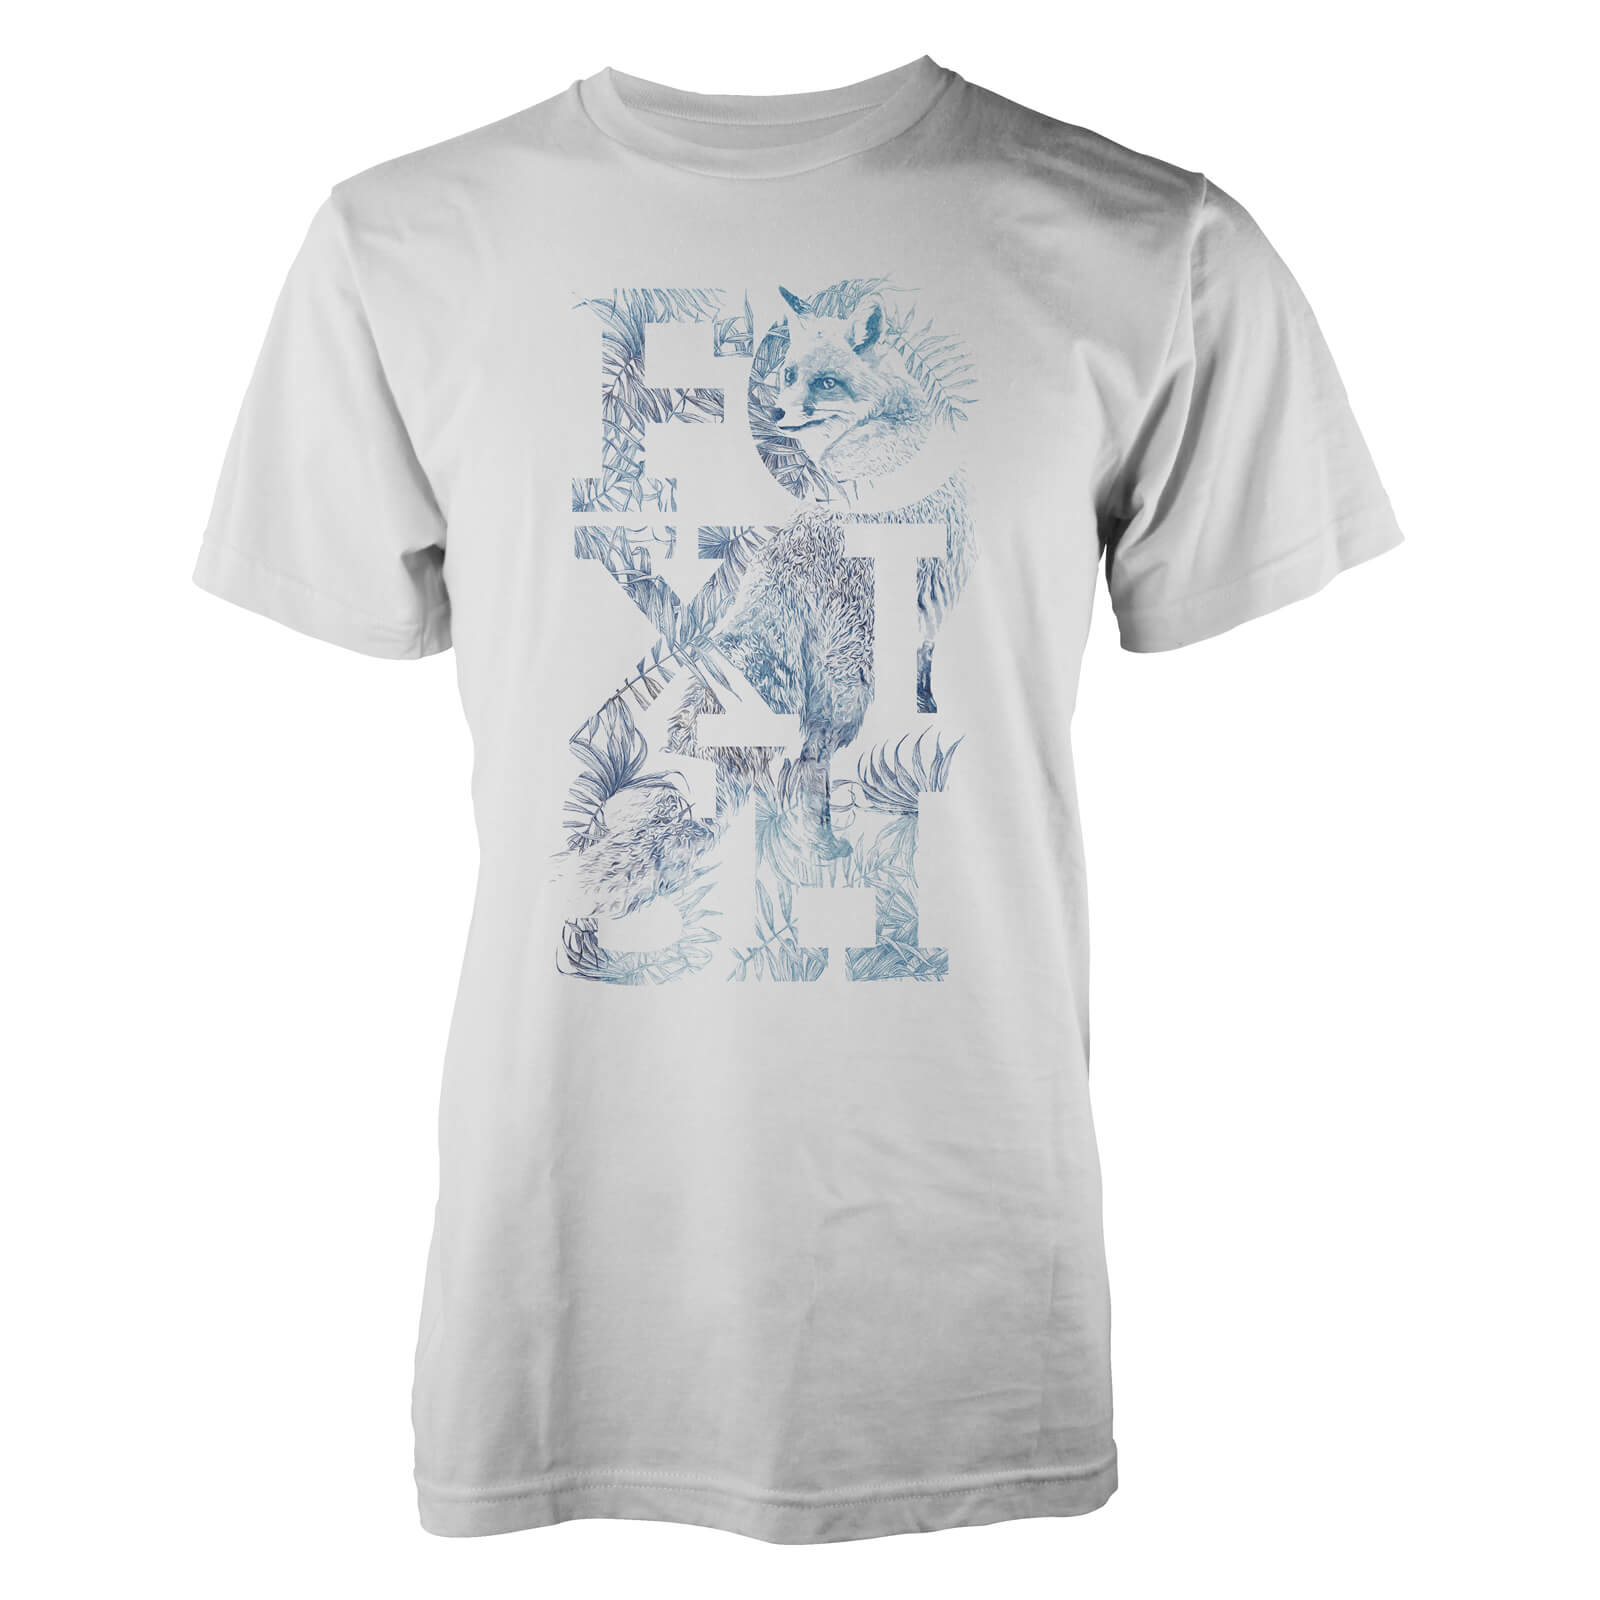 Farkas Foxish Men's T-Shirt - M - White